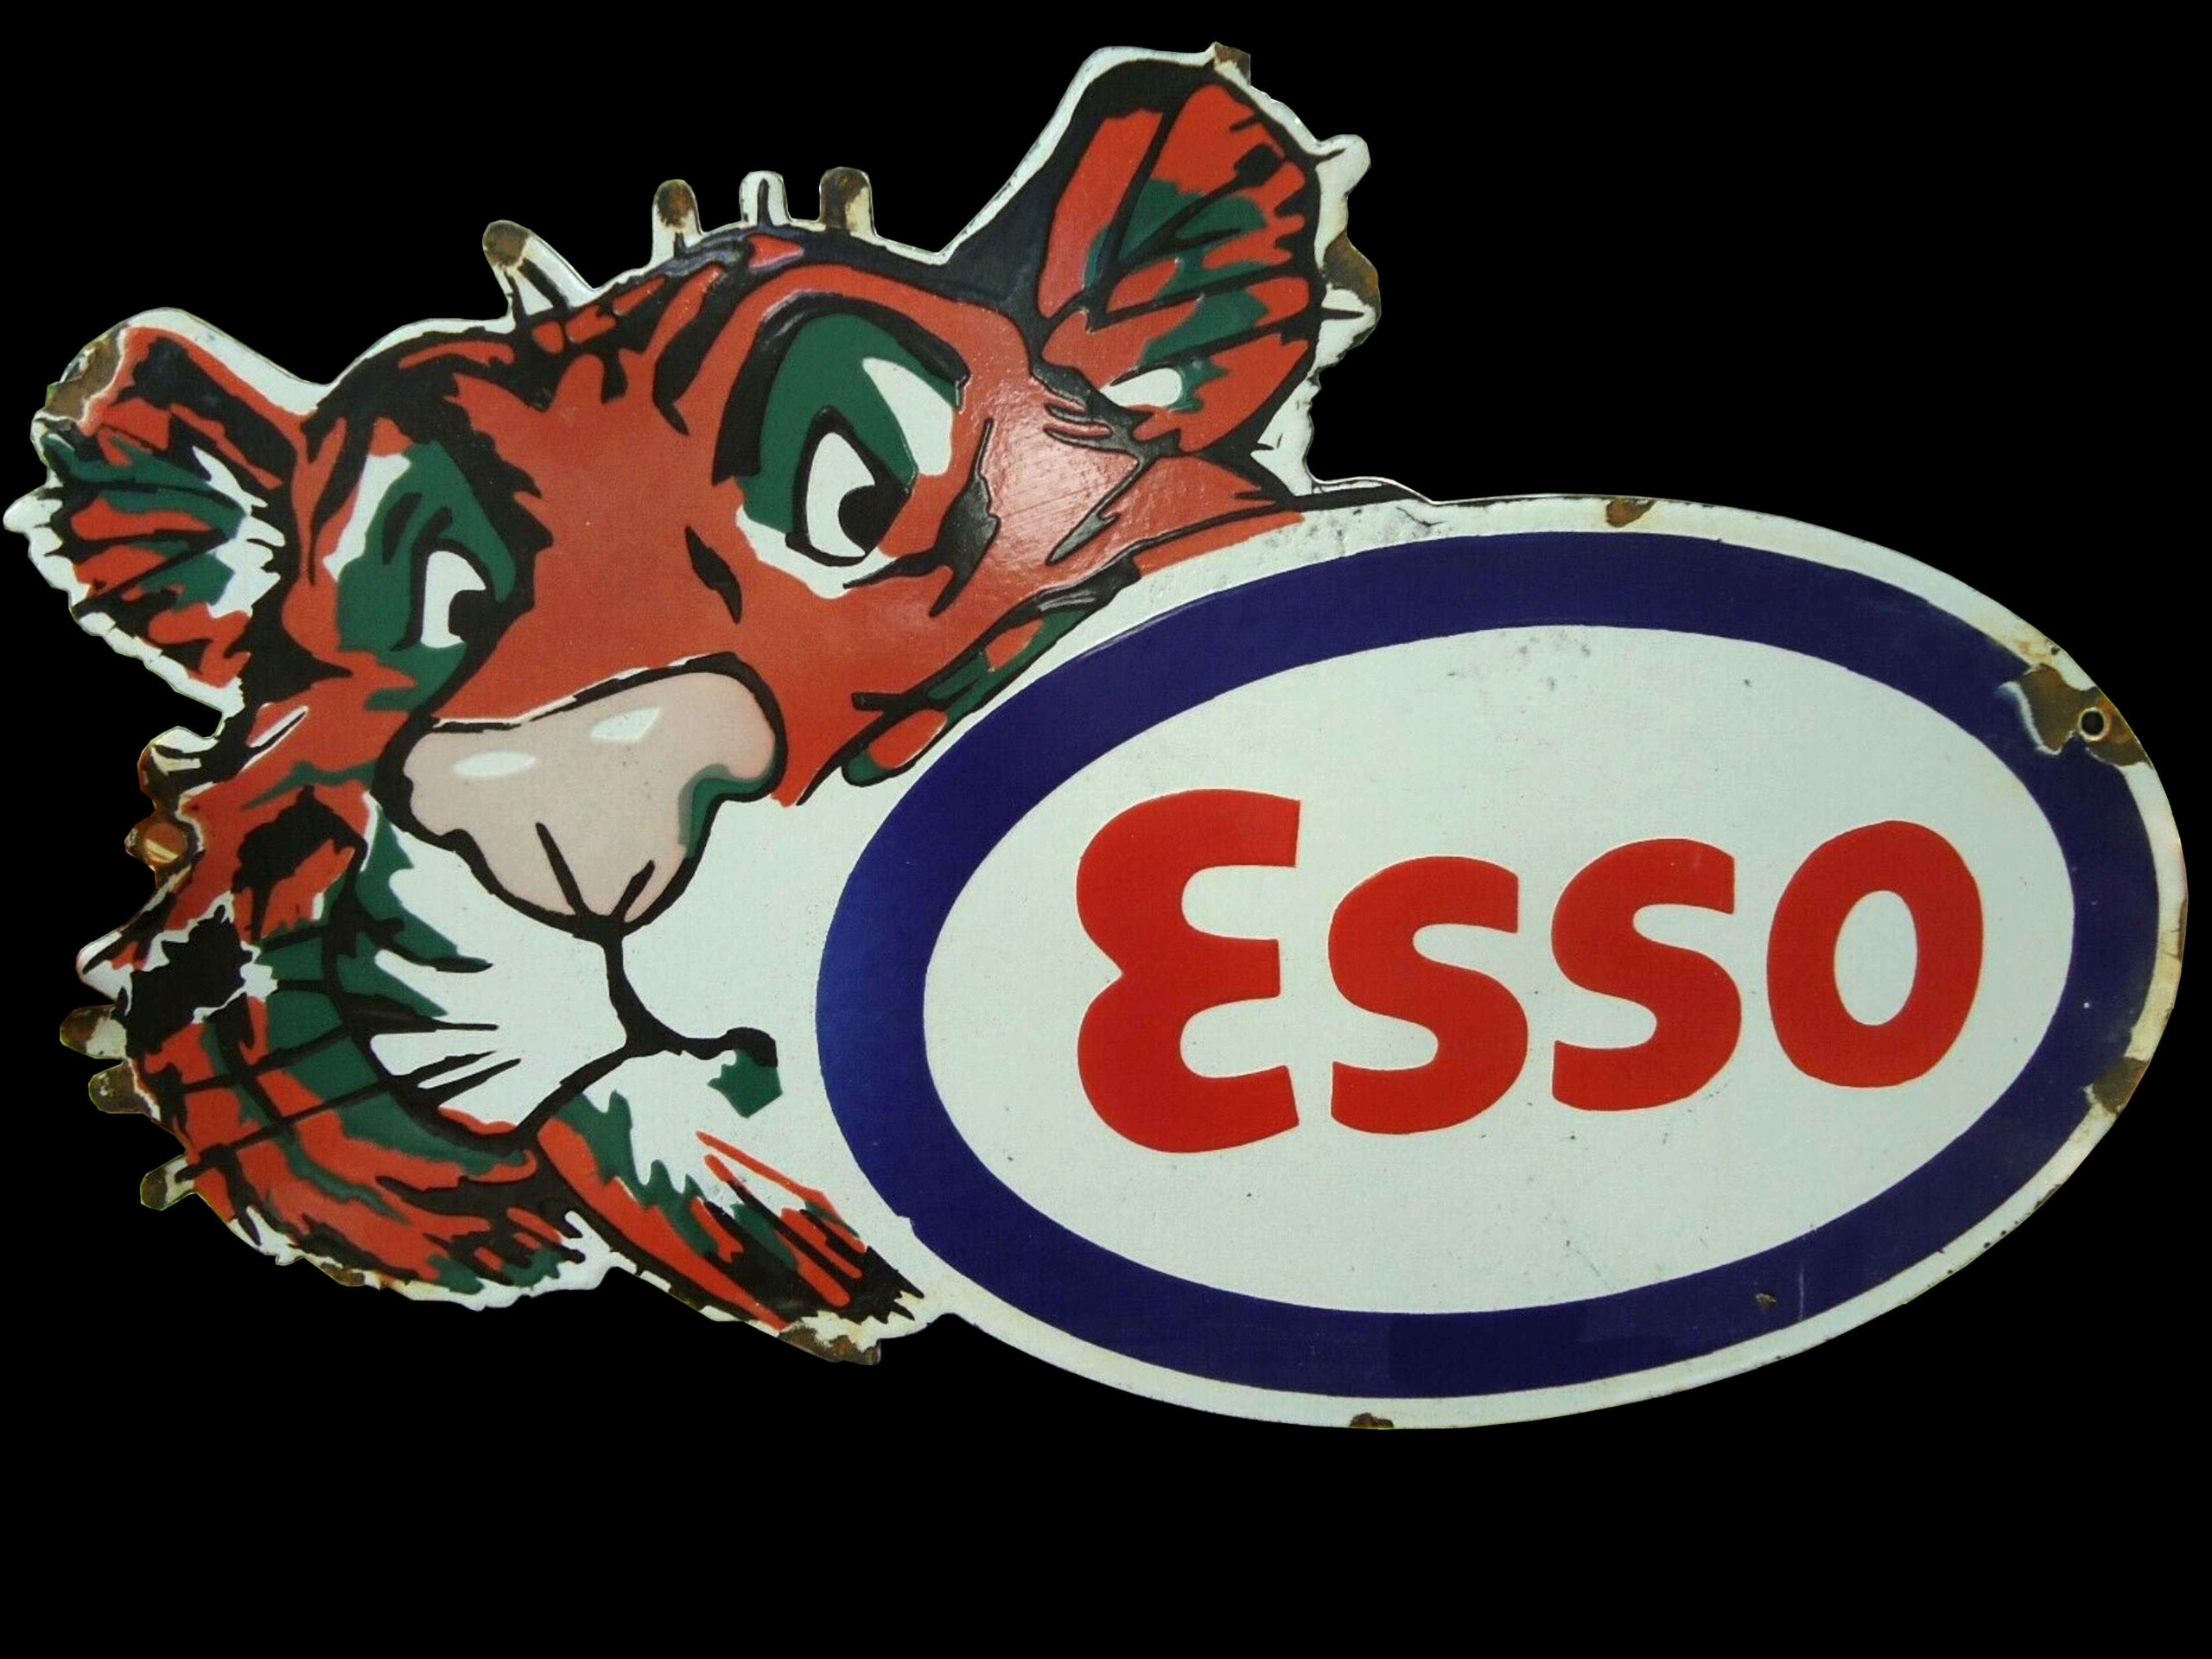 plate advertising  Esso cat 70's PJM 75 gaz assiette publicitaire esso chat 